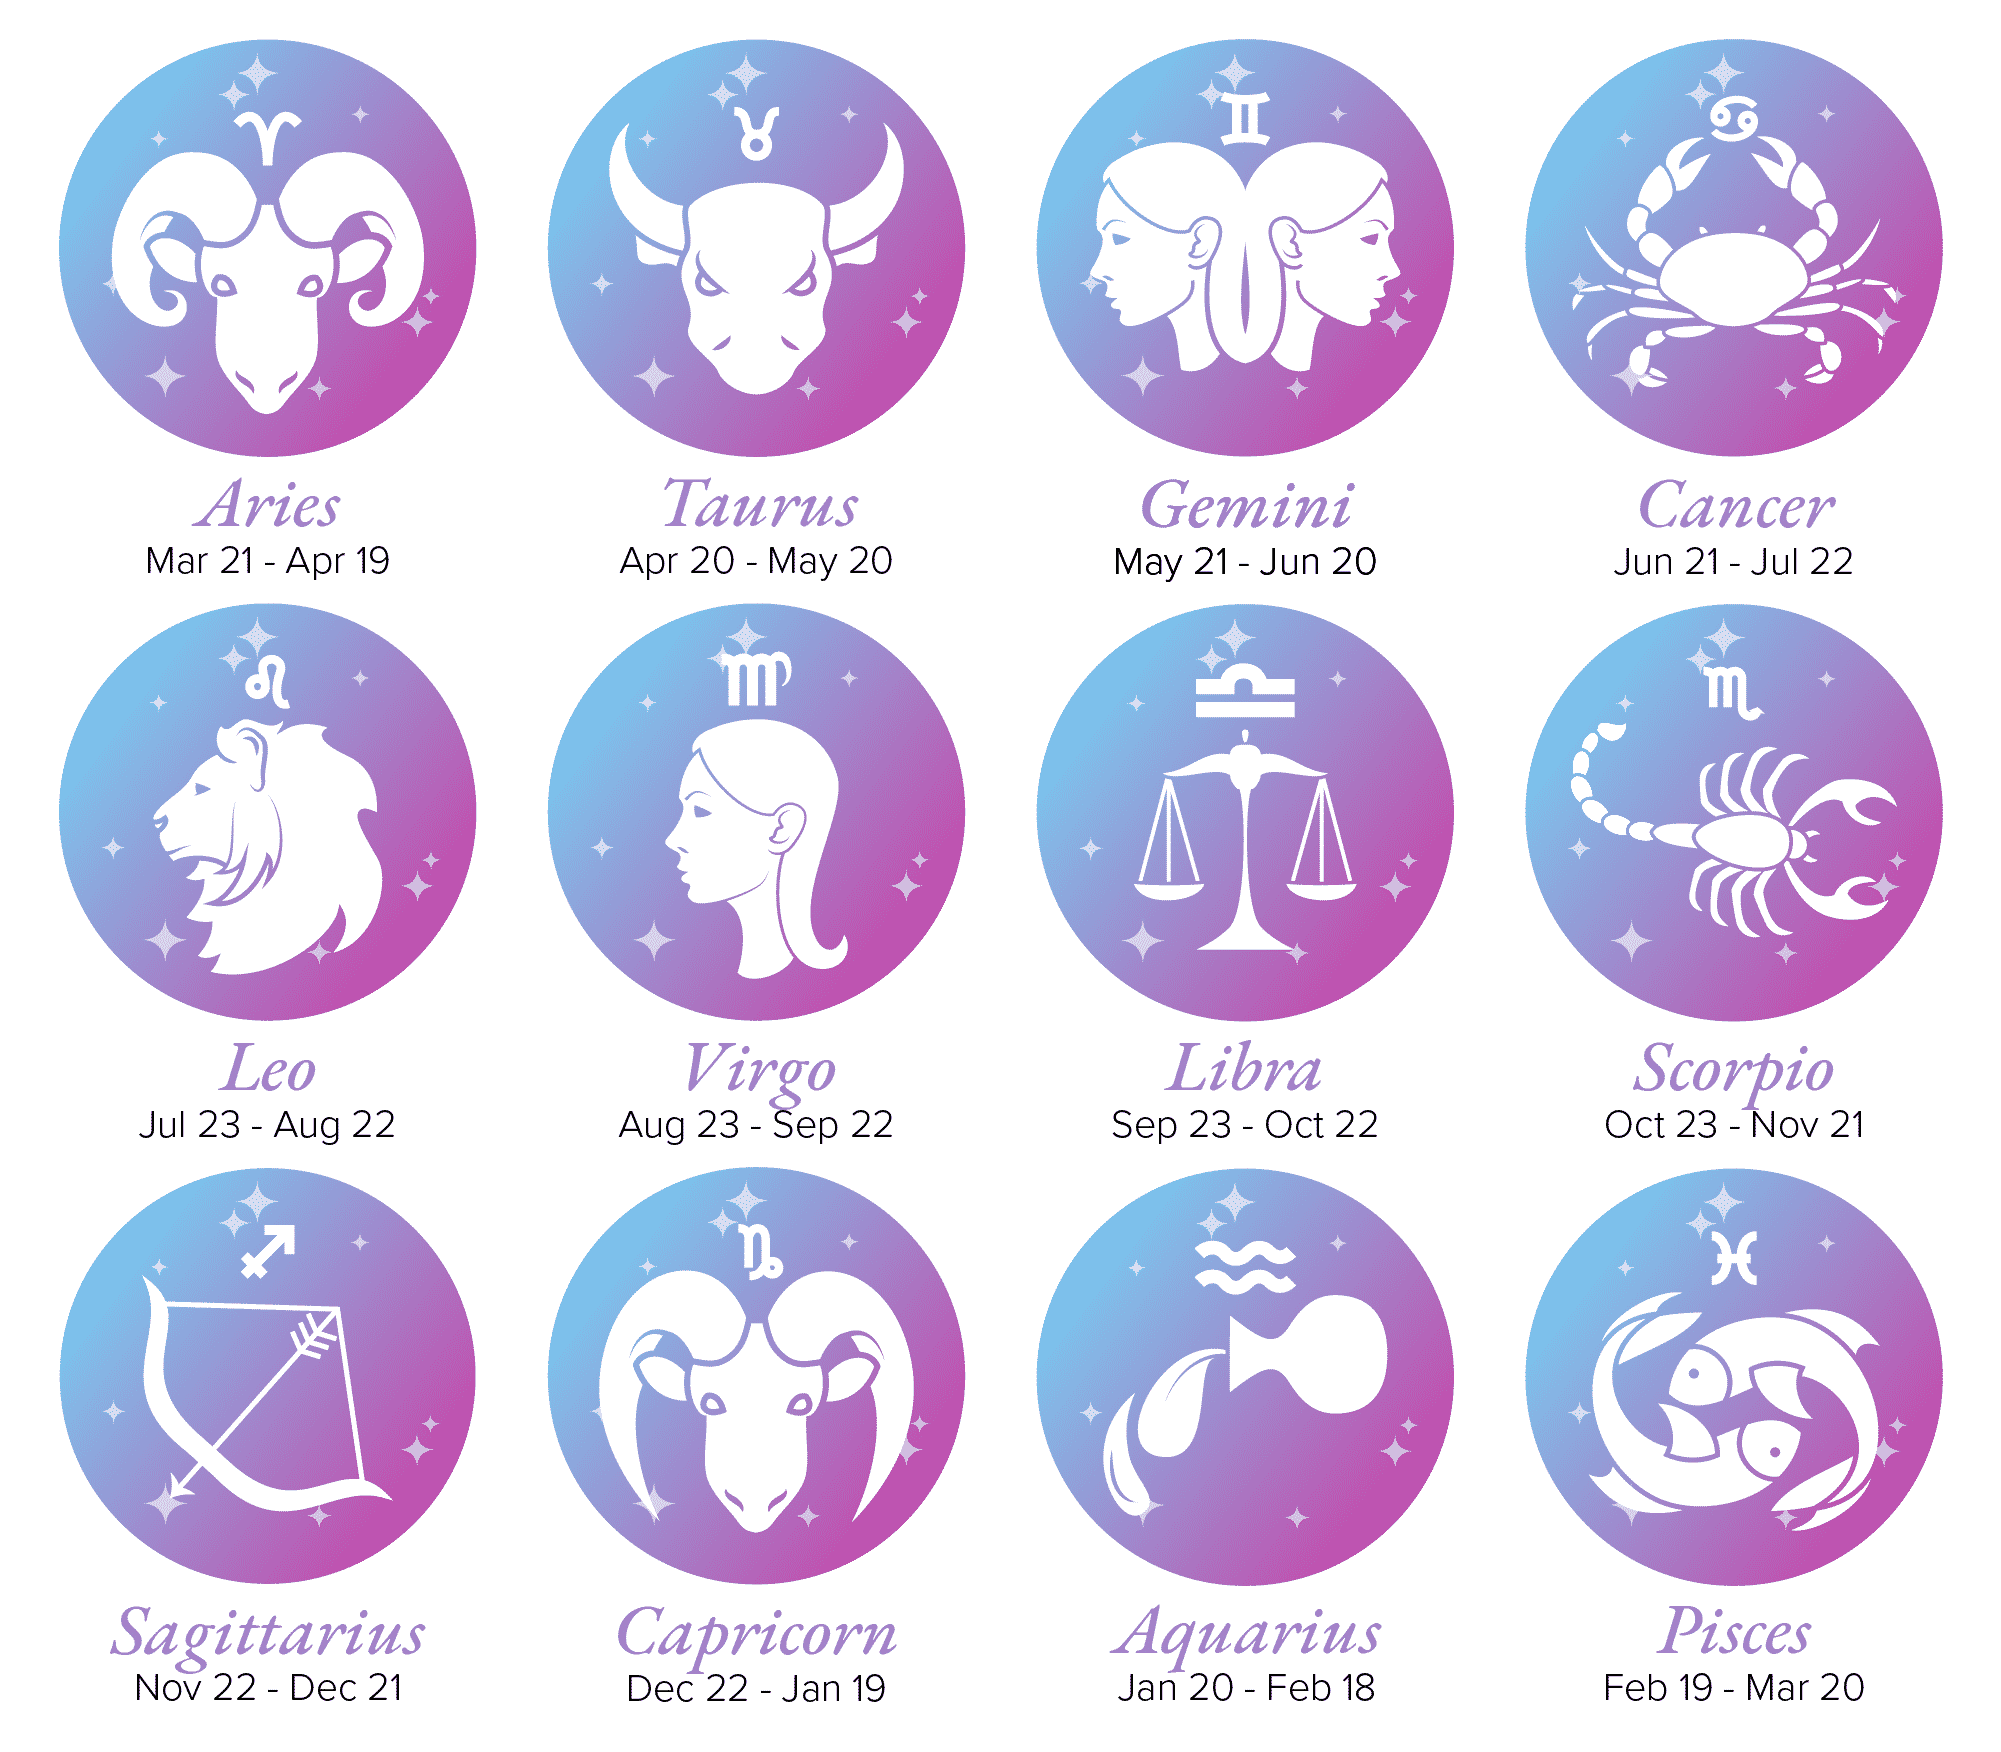 Zodiac Signs List with Dates and Symbols; Aries, Taurus, Gemini, Cancer, Leo, Virgo, Libra, Scorpio, Sagittarius, Capricorn, Aquarius and Pisces